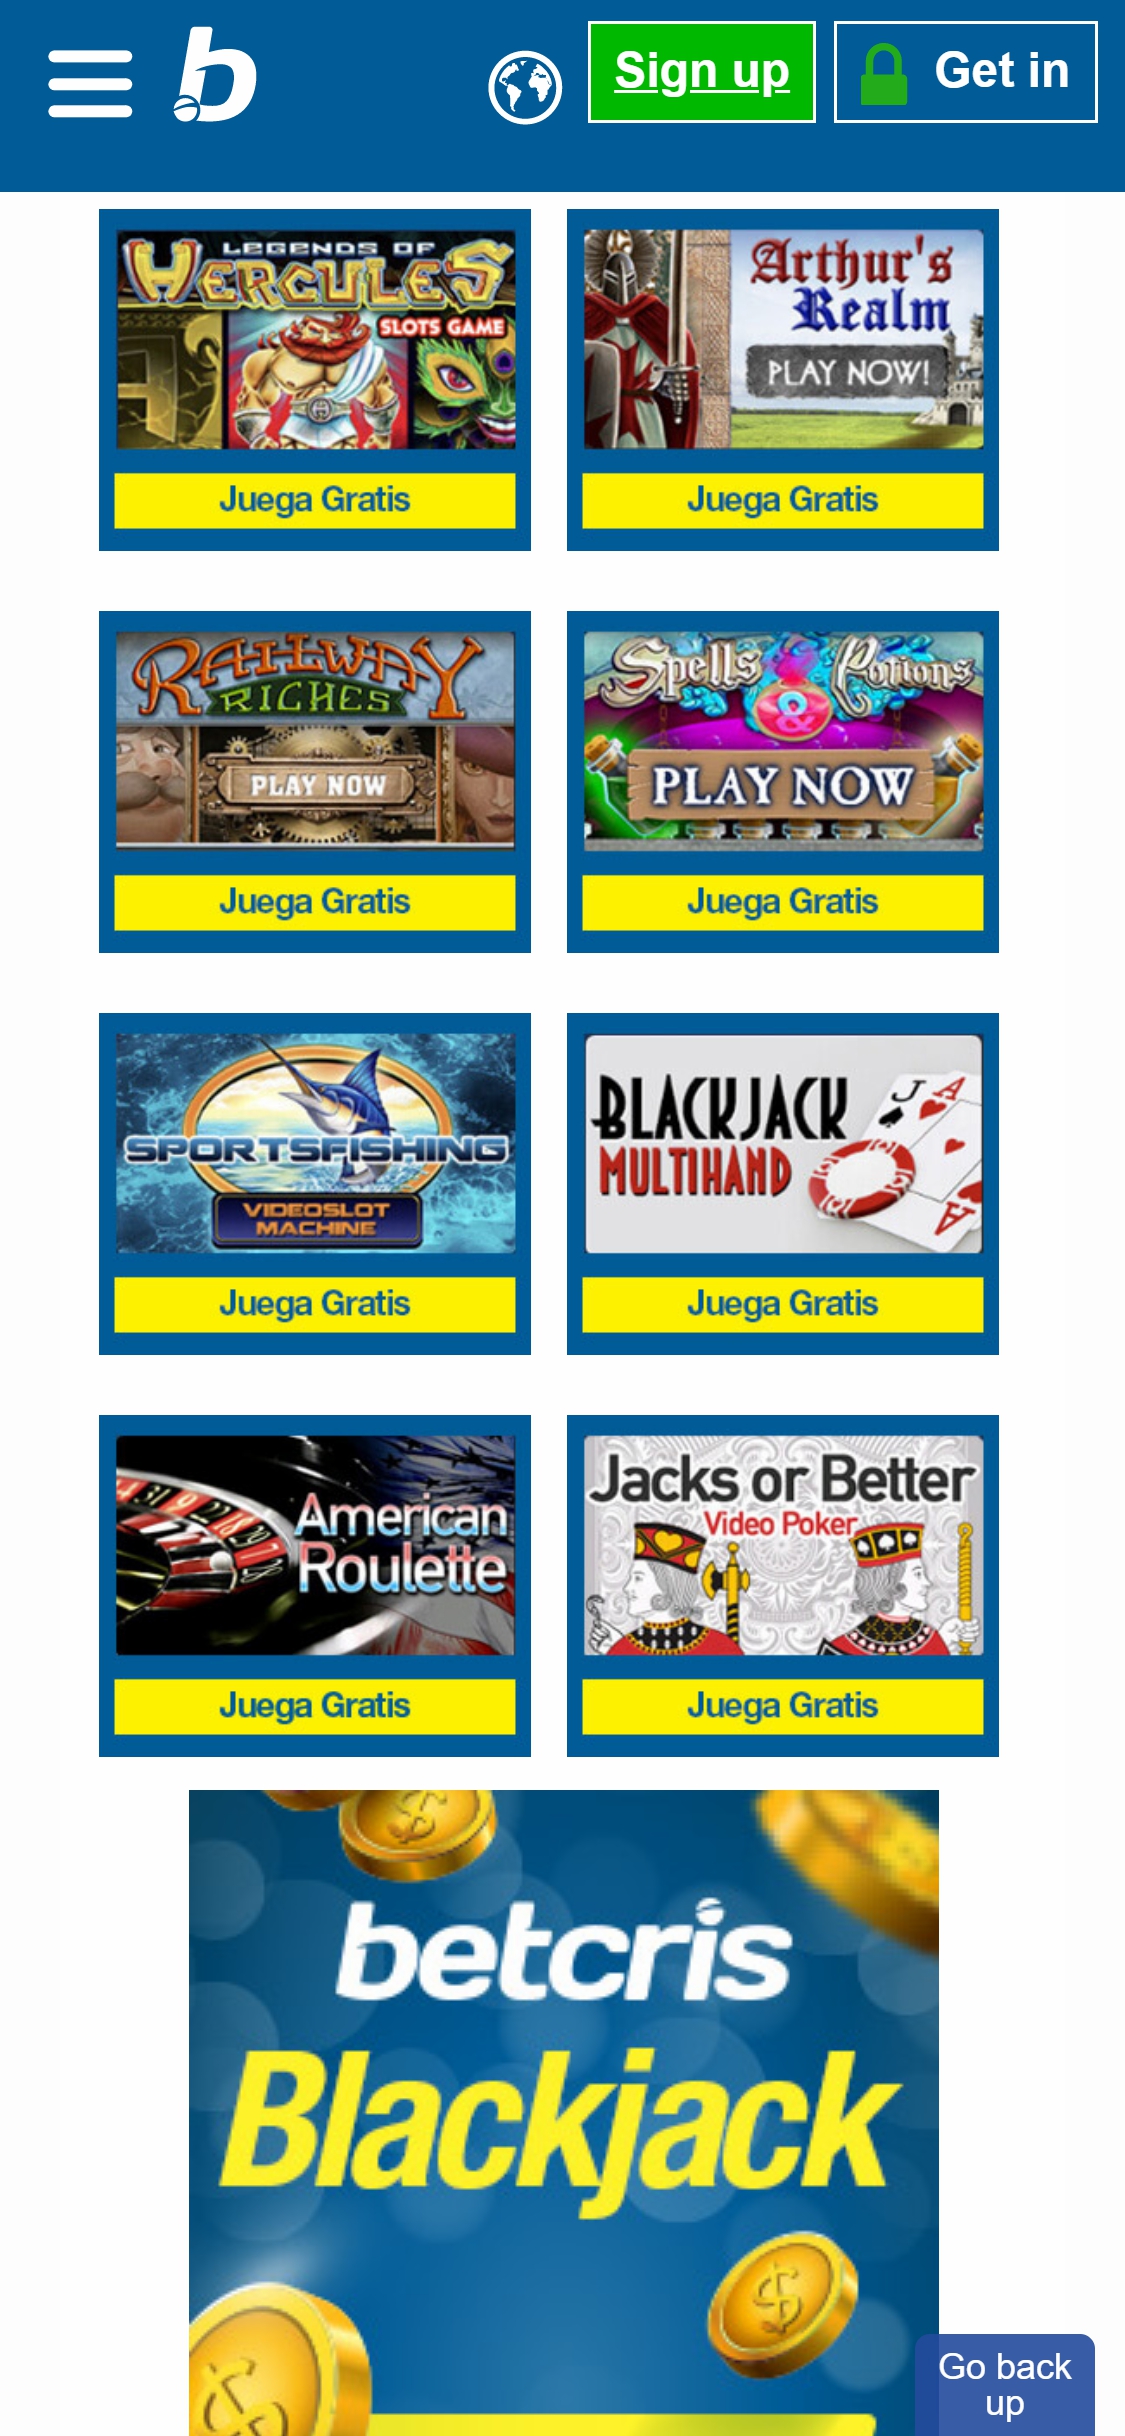 Betcris Casino Mobile Games Review